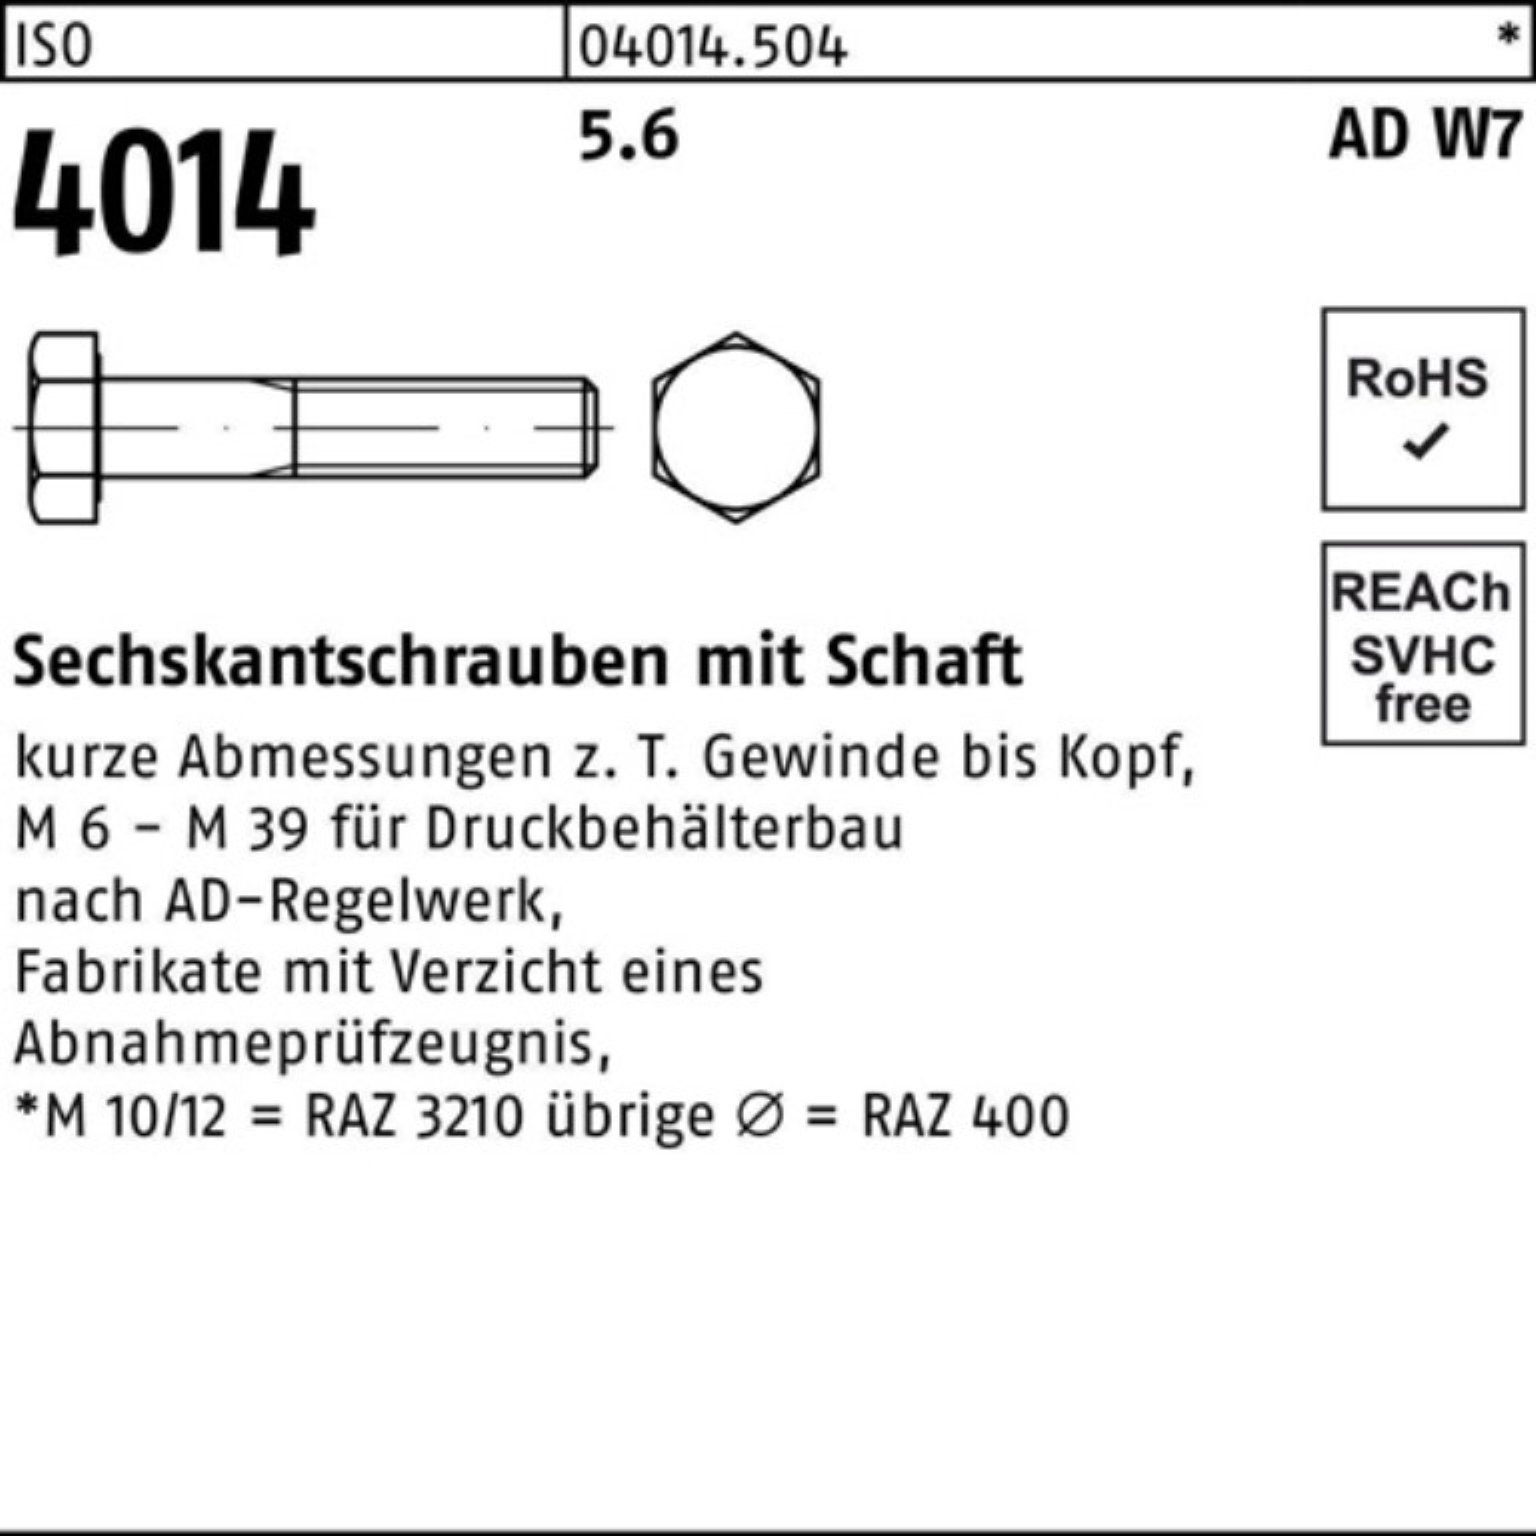 Sechskantschraube Pack Bufab M30x Sechskantschraube 150 1 W7 4014 ISO Schaft Stück 100er 5.6